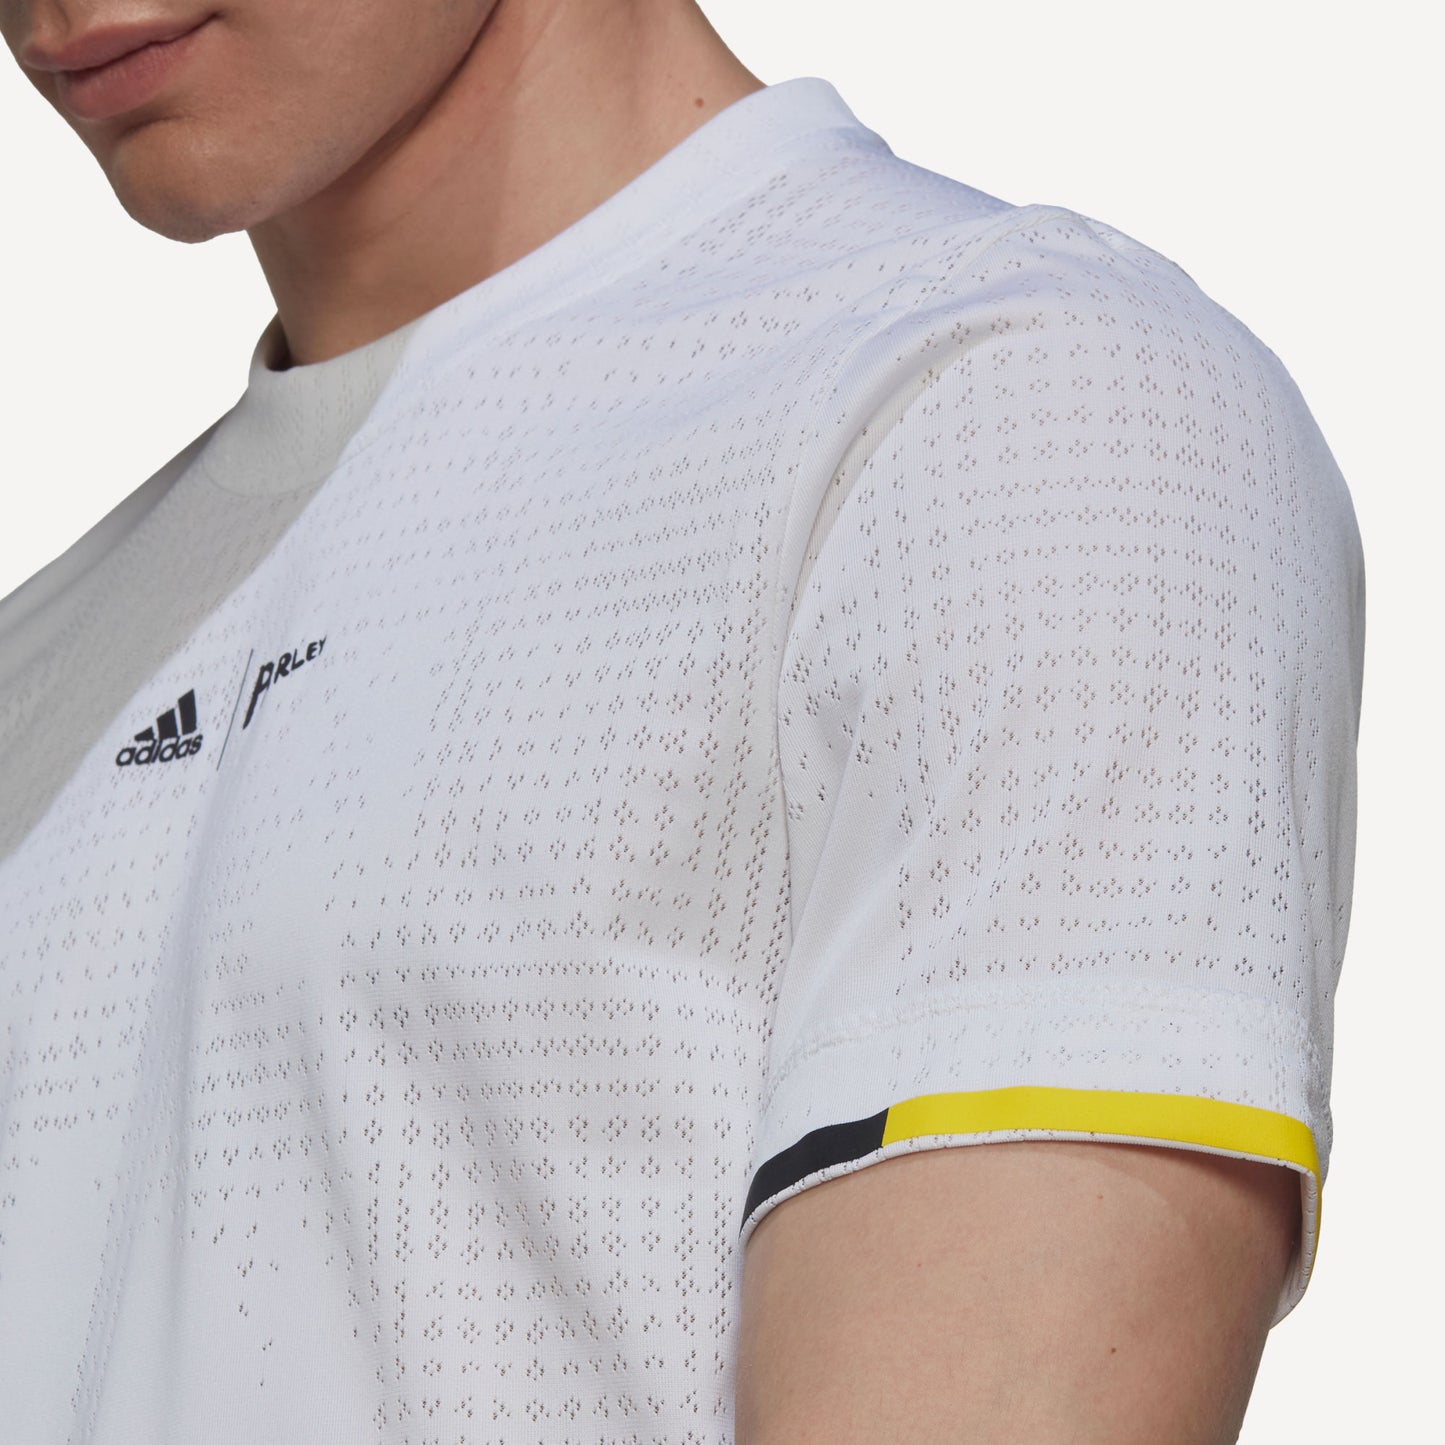 adidas London Freelift Men's Tennis Shirt White (5)